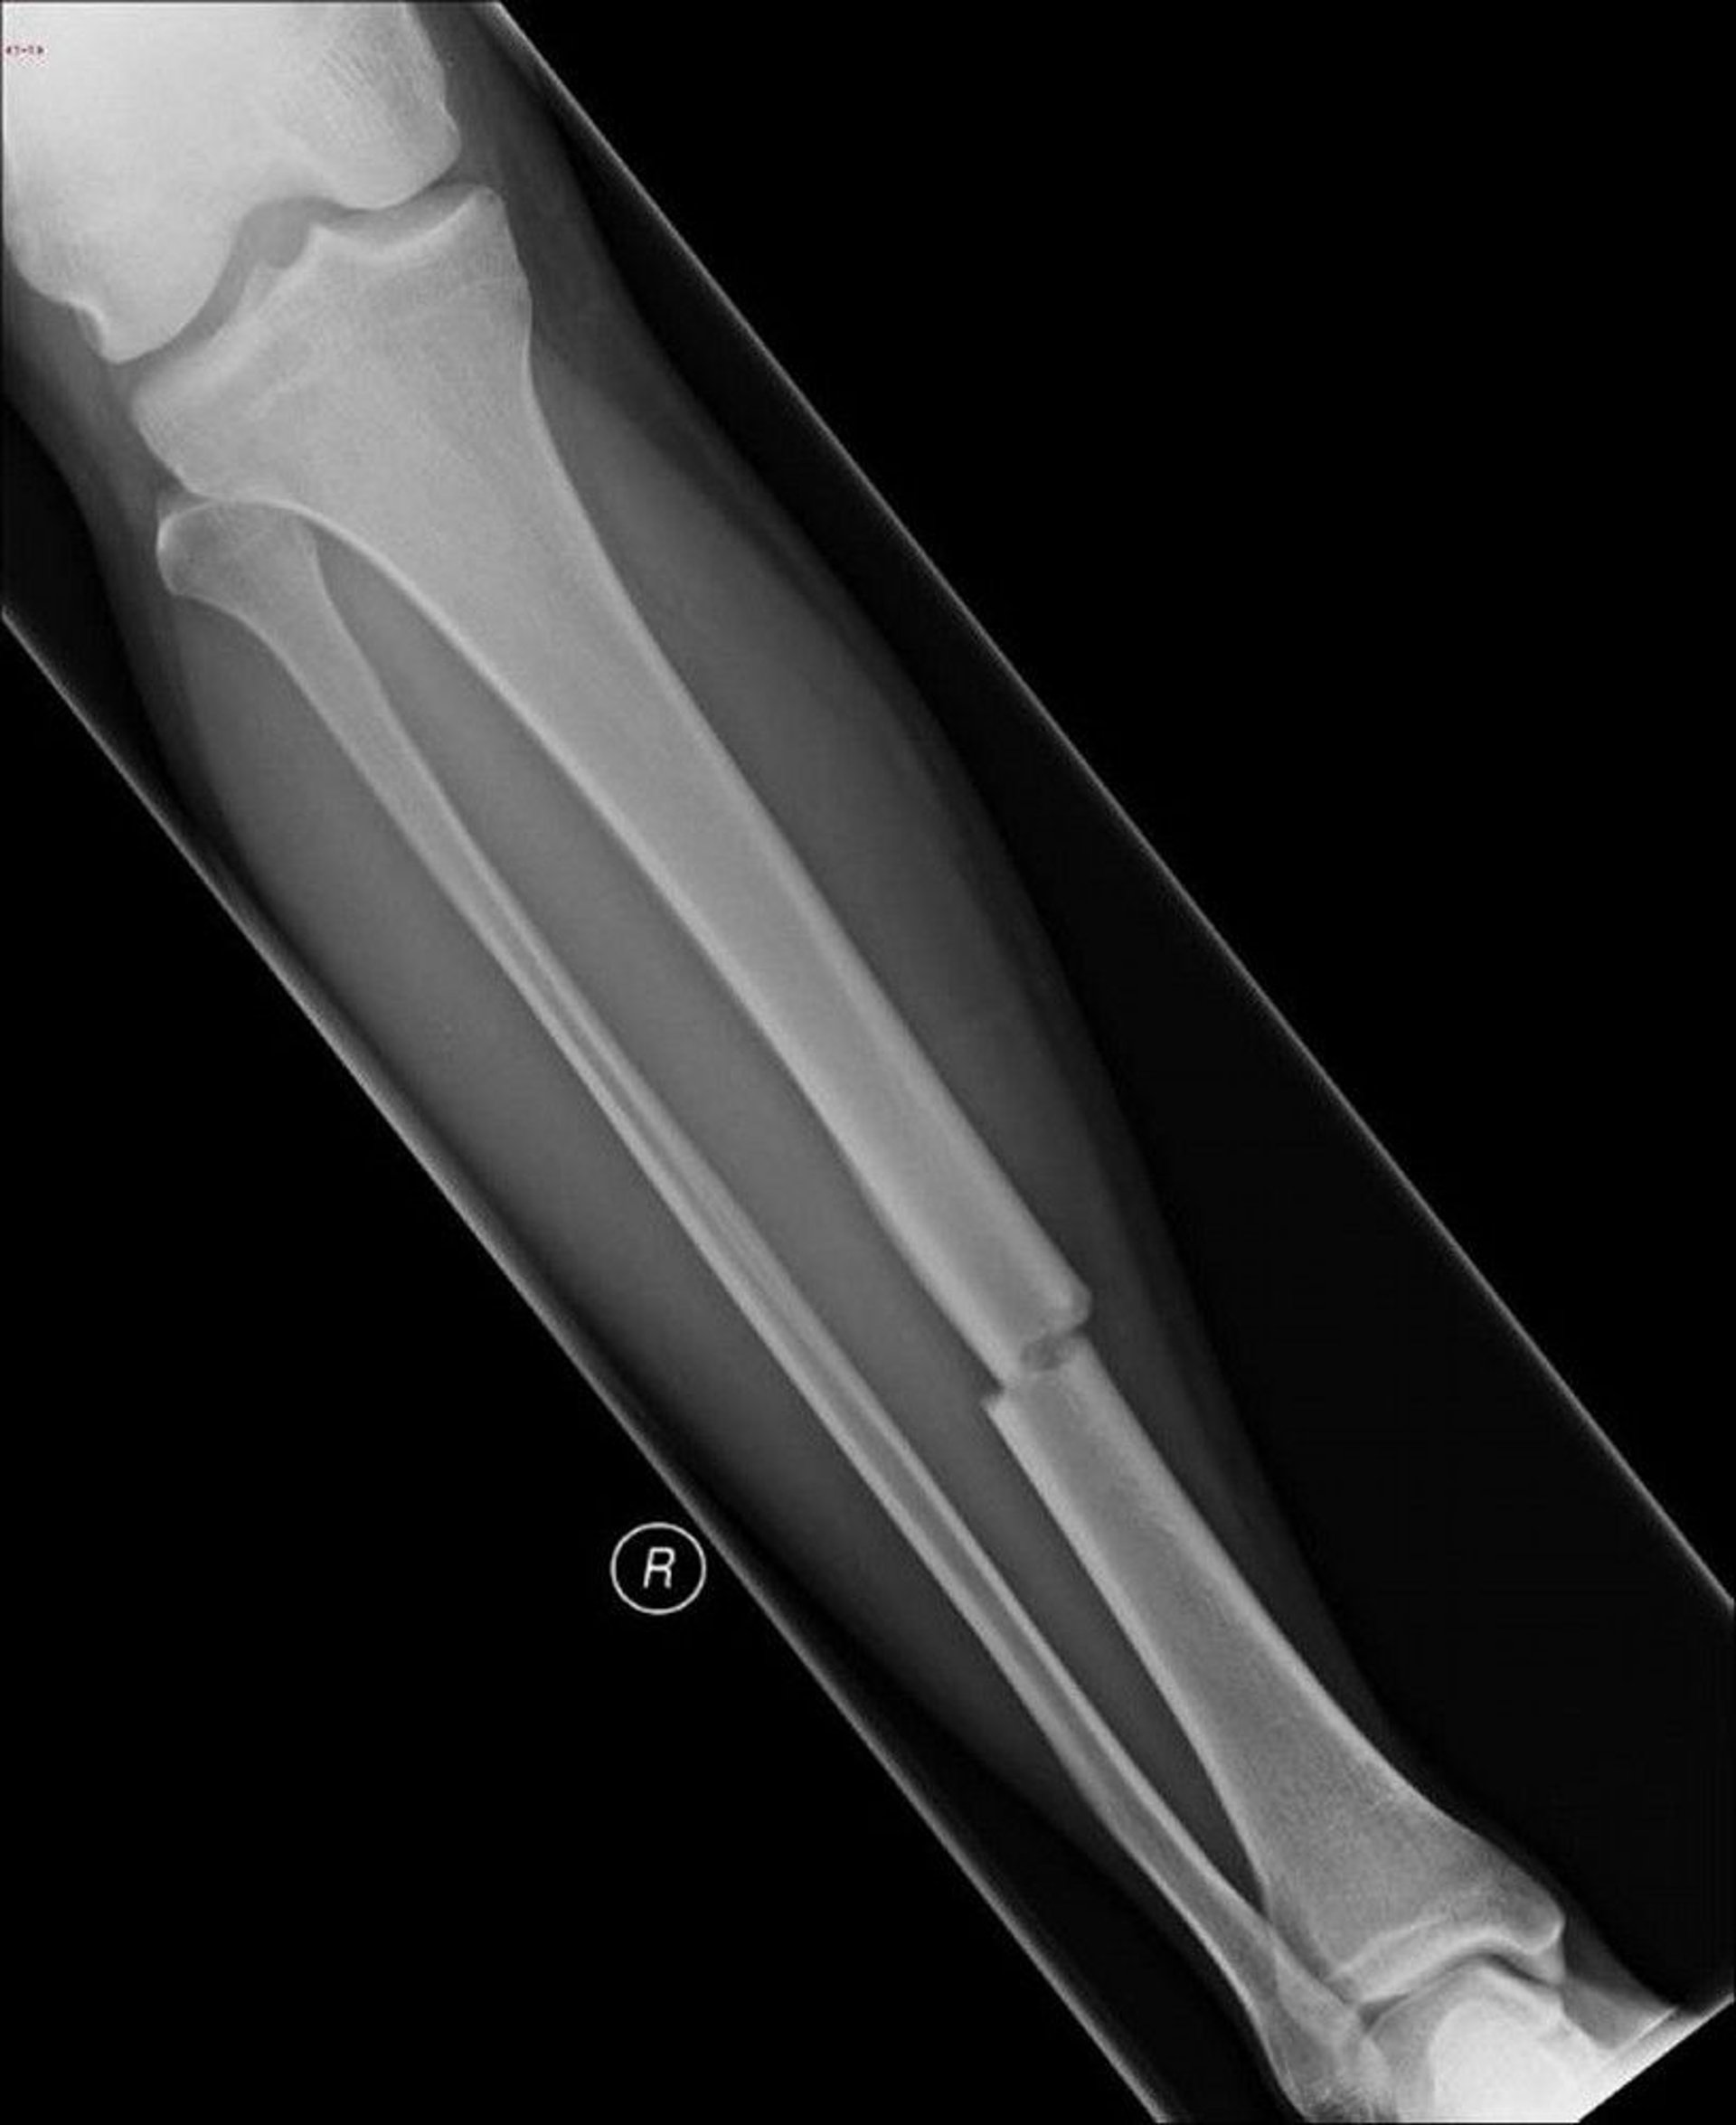 Broken Shin Bone (Tibia)